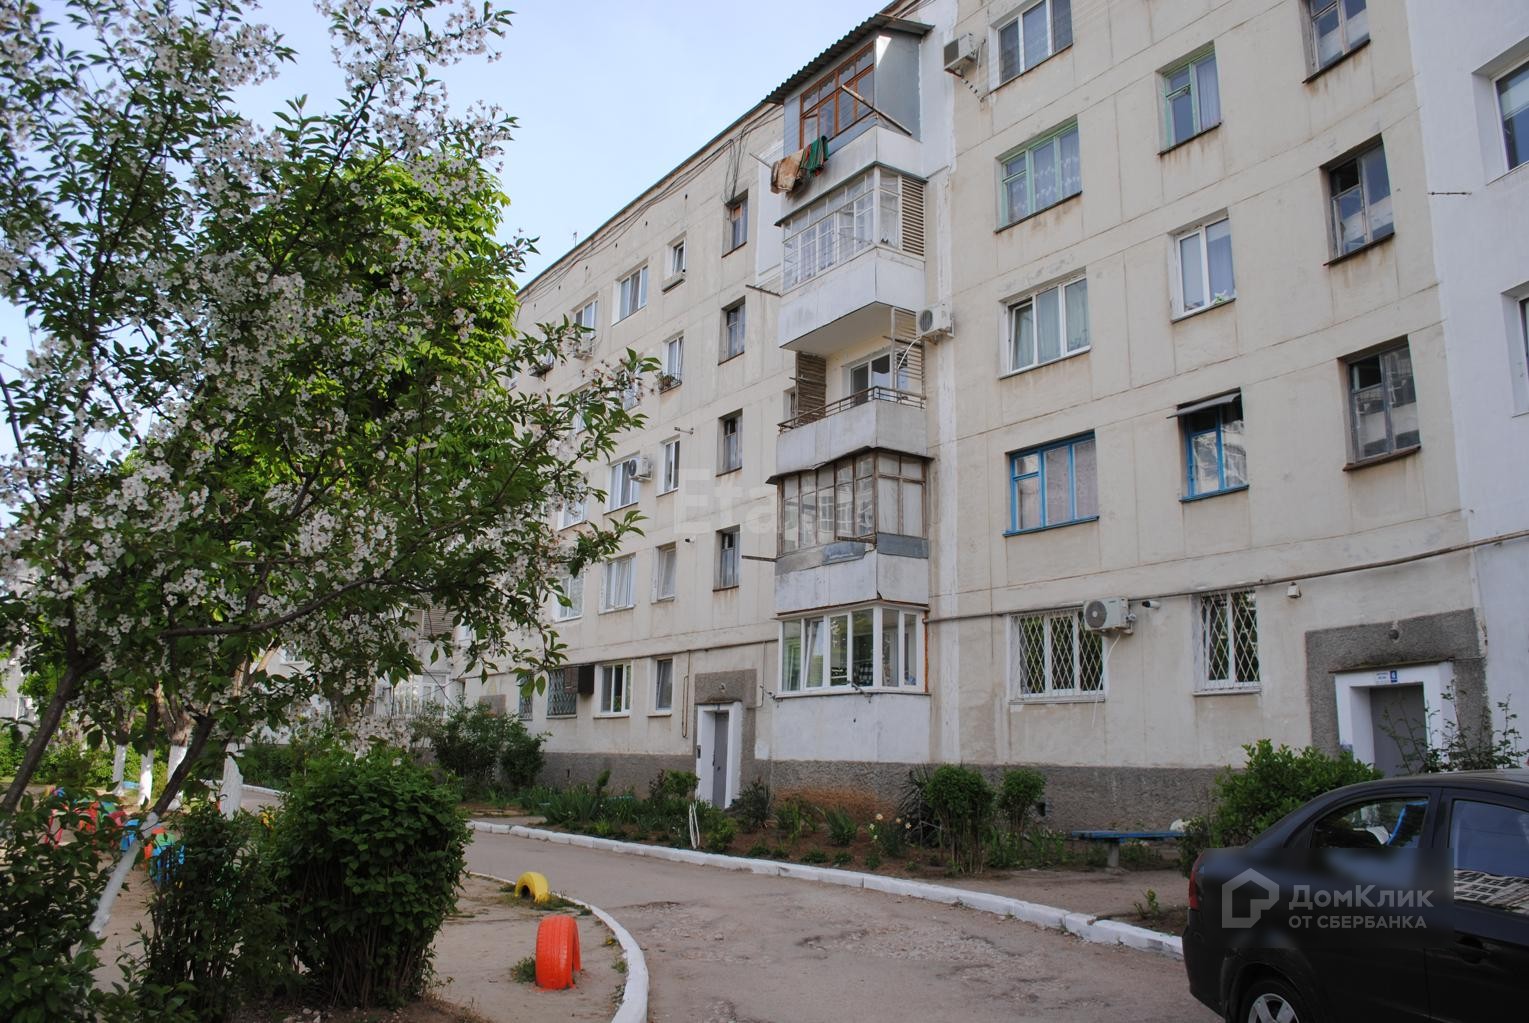 г. Севастополь, ул. Степаняна, д. 9 - фасад здания